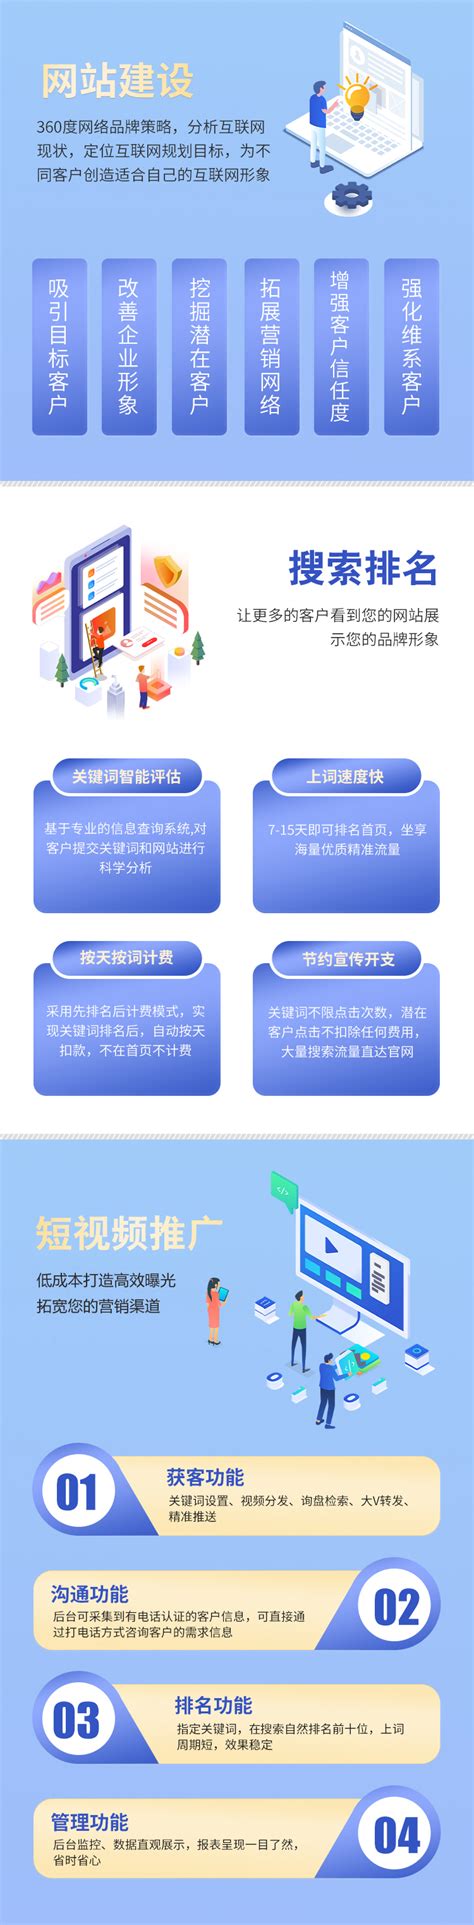 浙江网站建设企业推荐